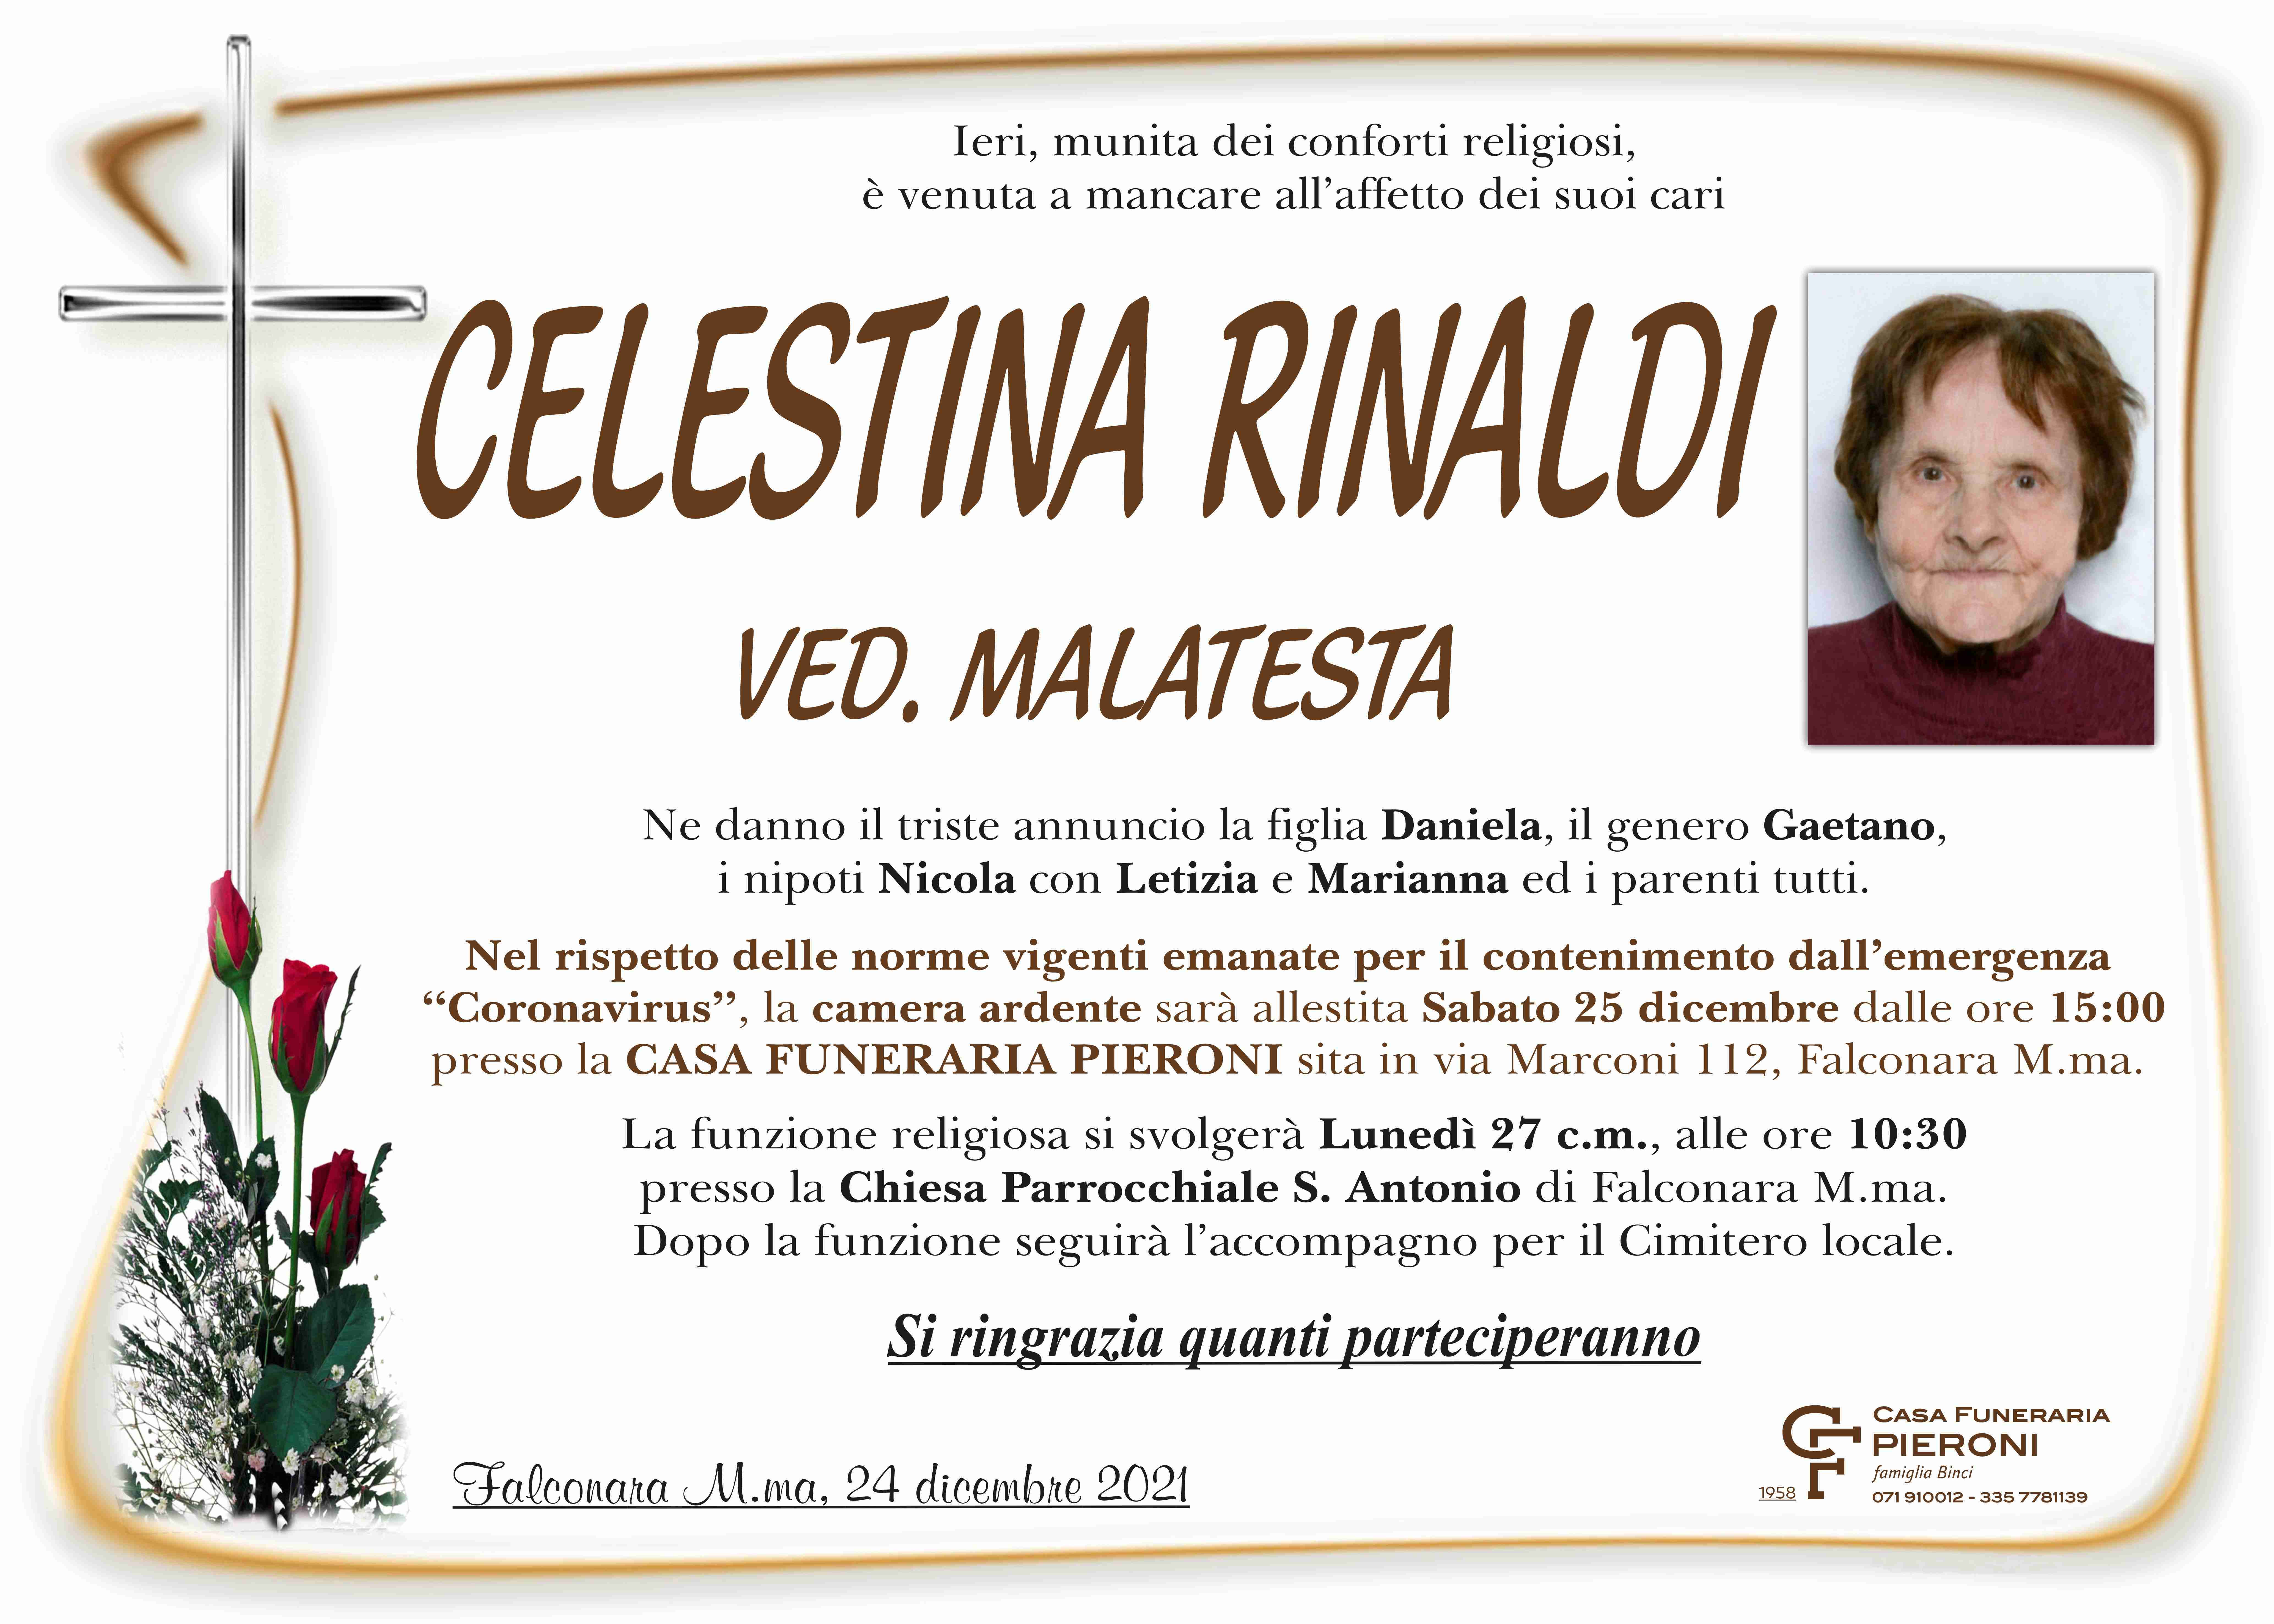 Celestina Rinaldi